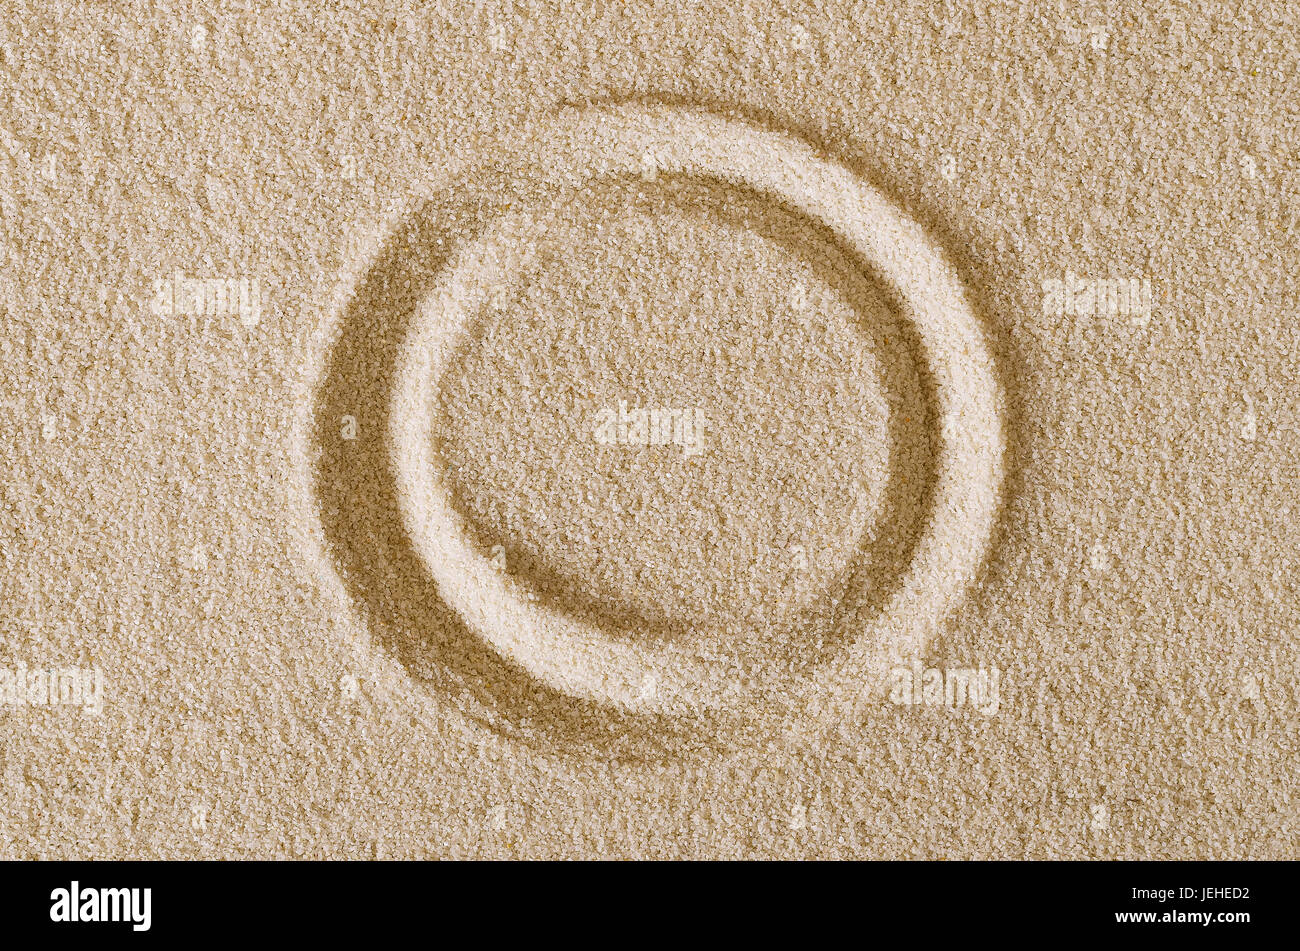 Kreis Form Impressum in Sandoberfläche. Eine geschlossene Kurve, einen Ring oder eine Disc in einen rechteckigen flachen Sand Bereich. Piktogramm und Zeichen. Makrofoto hautnah. Stockfoto